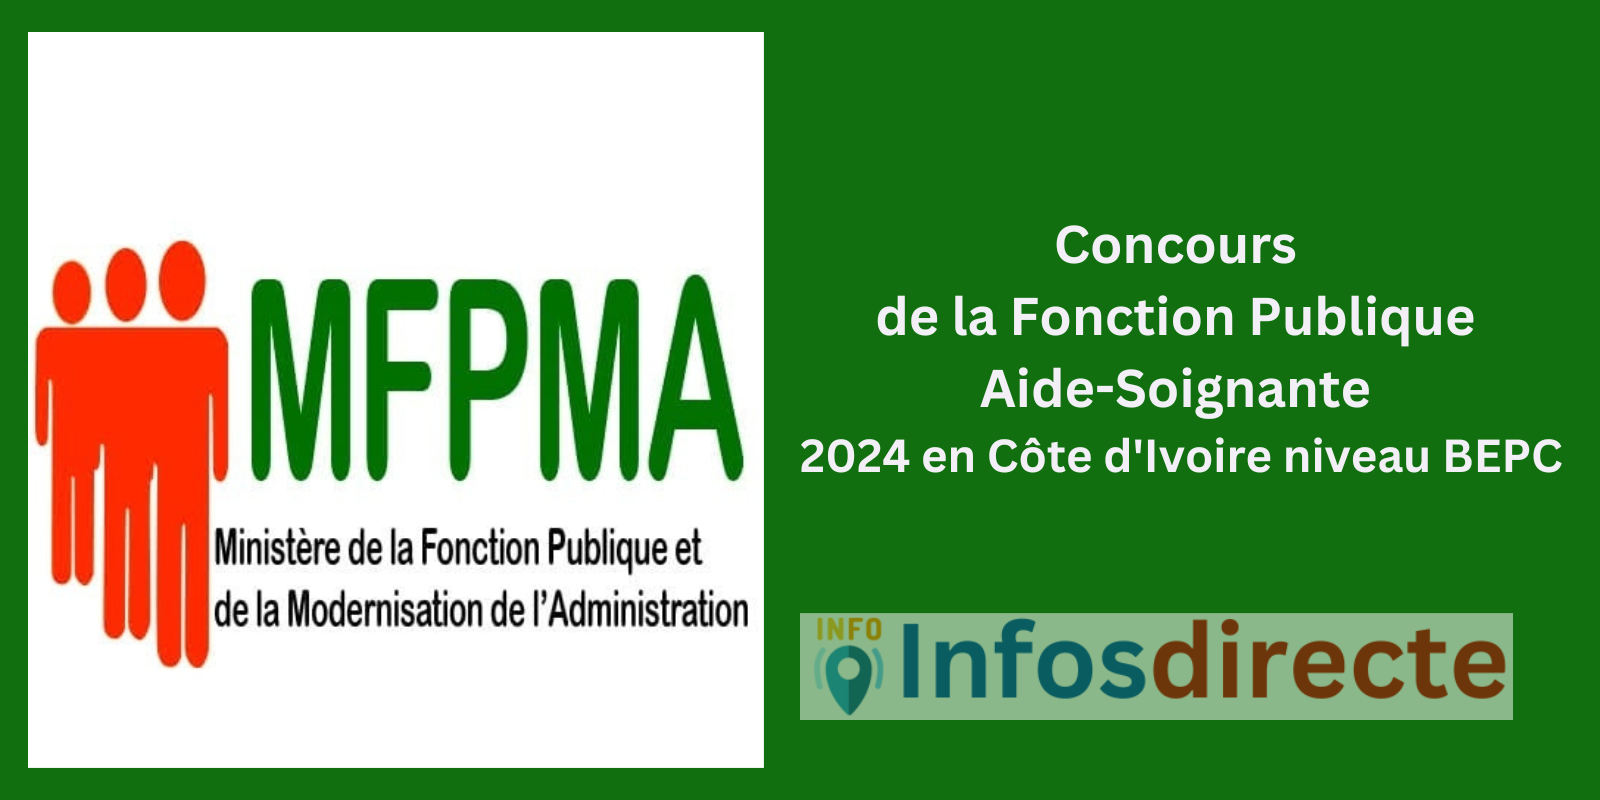 Concours de la Fonction Publique Aide-Soignante 2024 en Côte d'Ivoire niveau BEPC